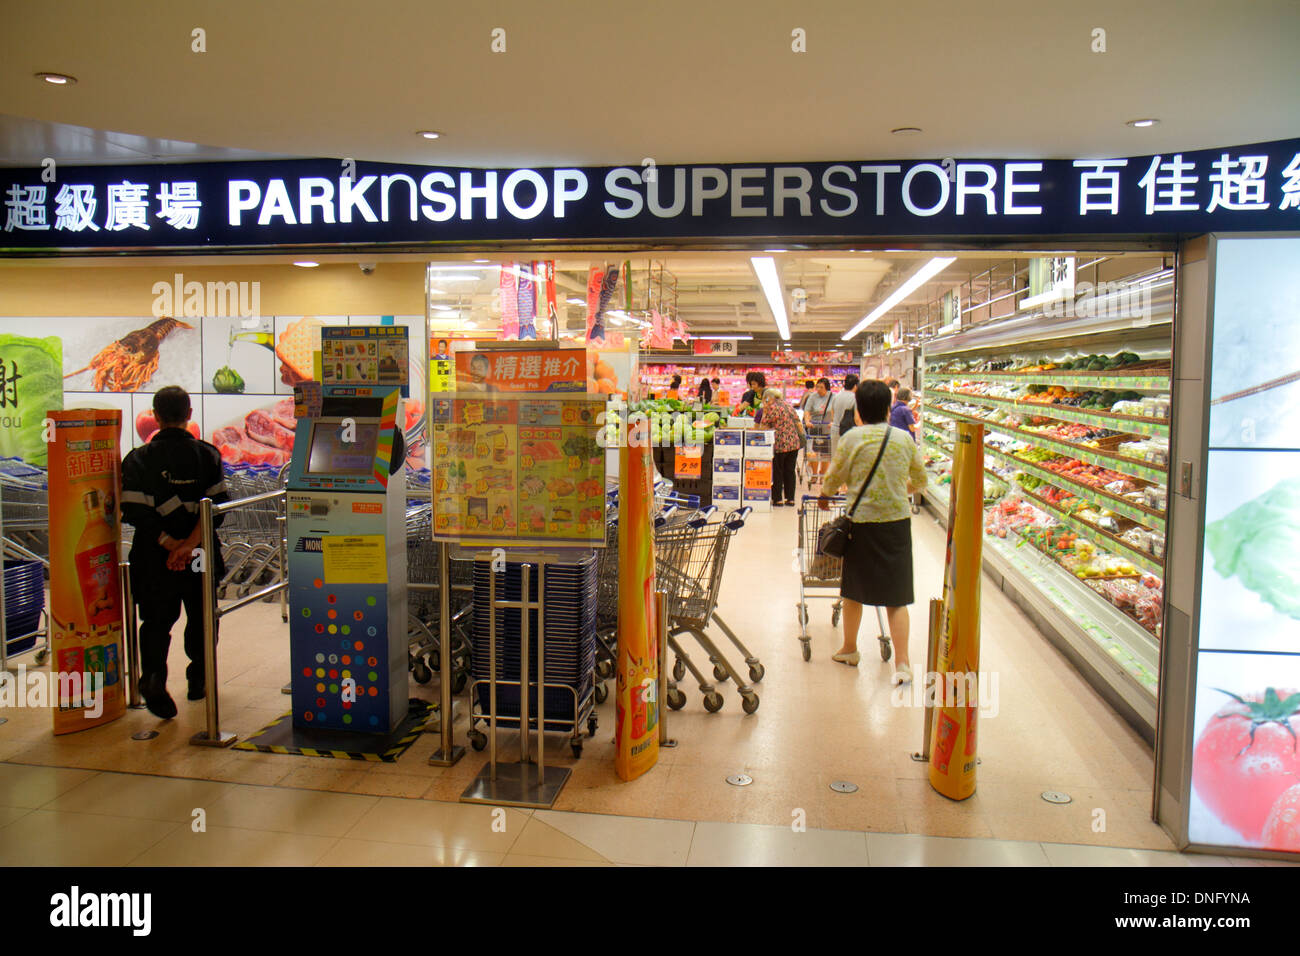 Hong Kong Cina,HK,Asia,Cinese,Orientale,Isola,North Point,King's Road,ParknShop Superstore,negozio di alimentari,supermercato,cibo,vendita scaffali esposizione Foto Stock